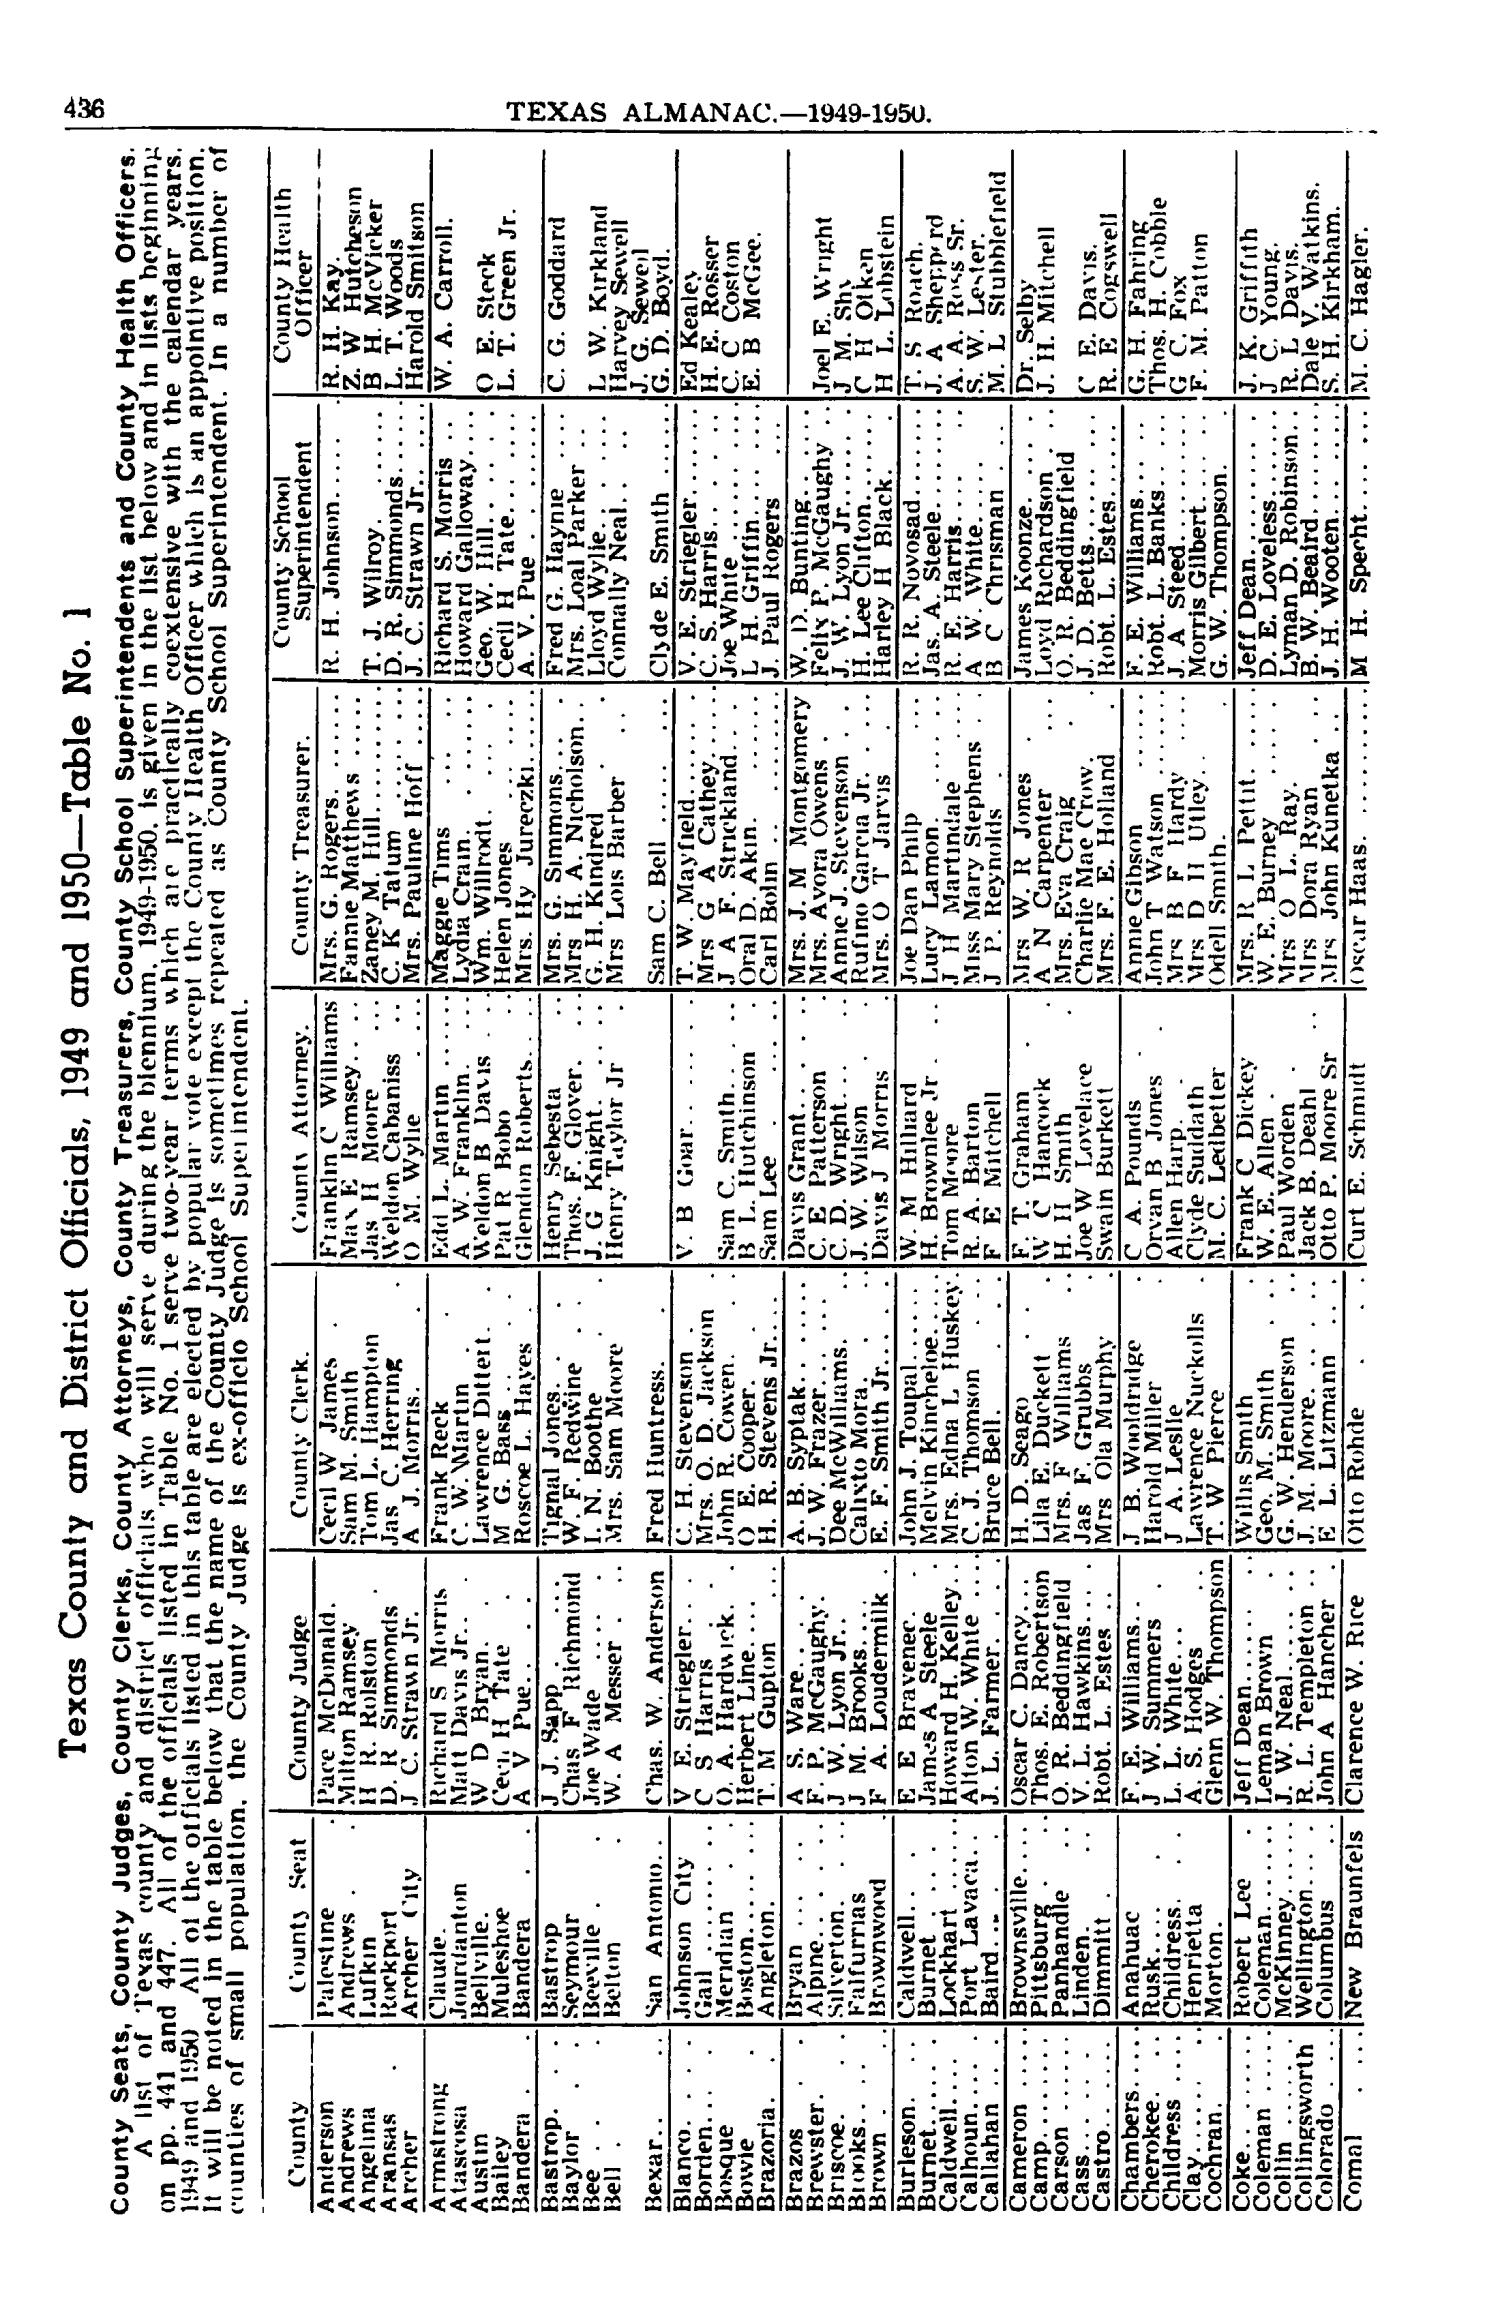 Texas Almanac, 1949-1950
                                                
                                                    436
                                                